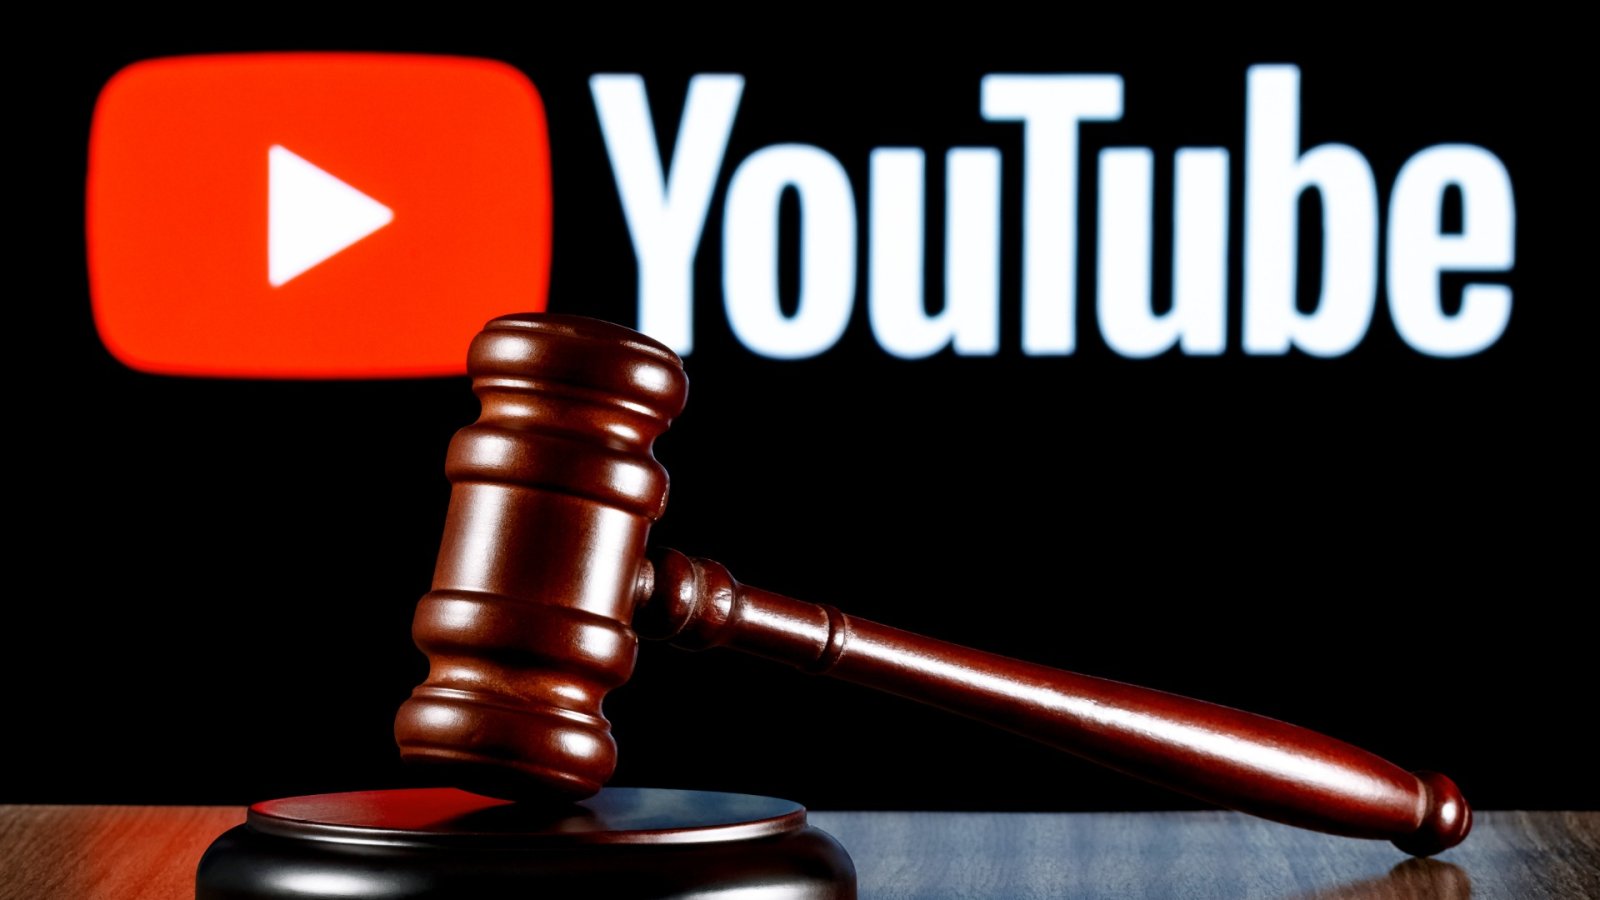 Μήνυση 22 εκατομμυρίων δολαρίων κατά της μητέρας ενός YouTuber που ισχυρίζεται την κακοποίηση